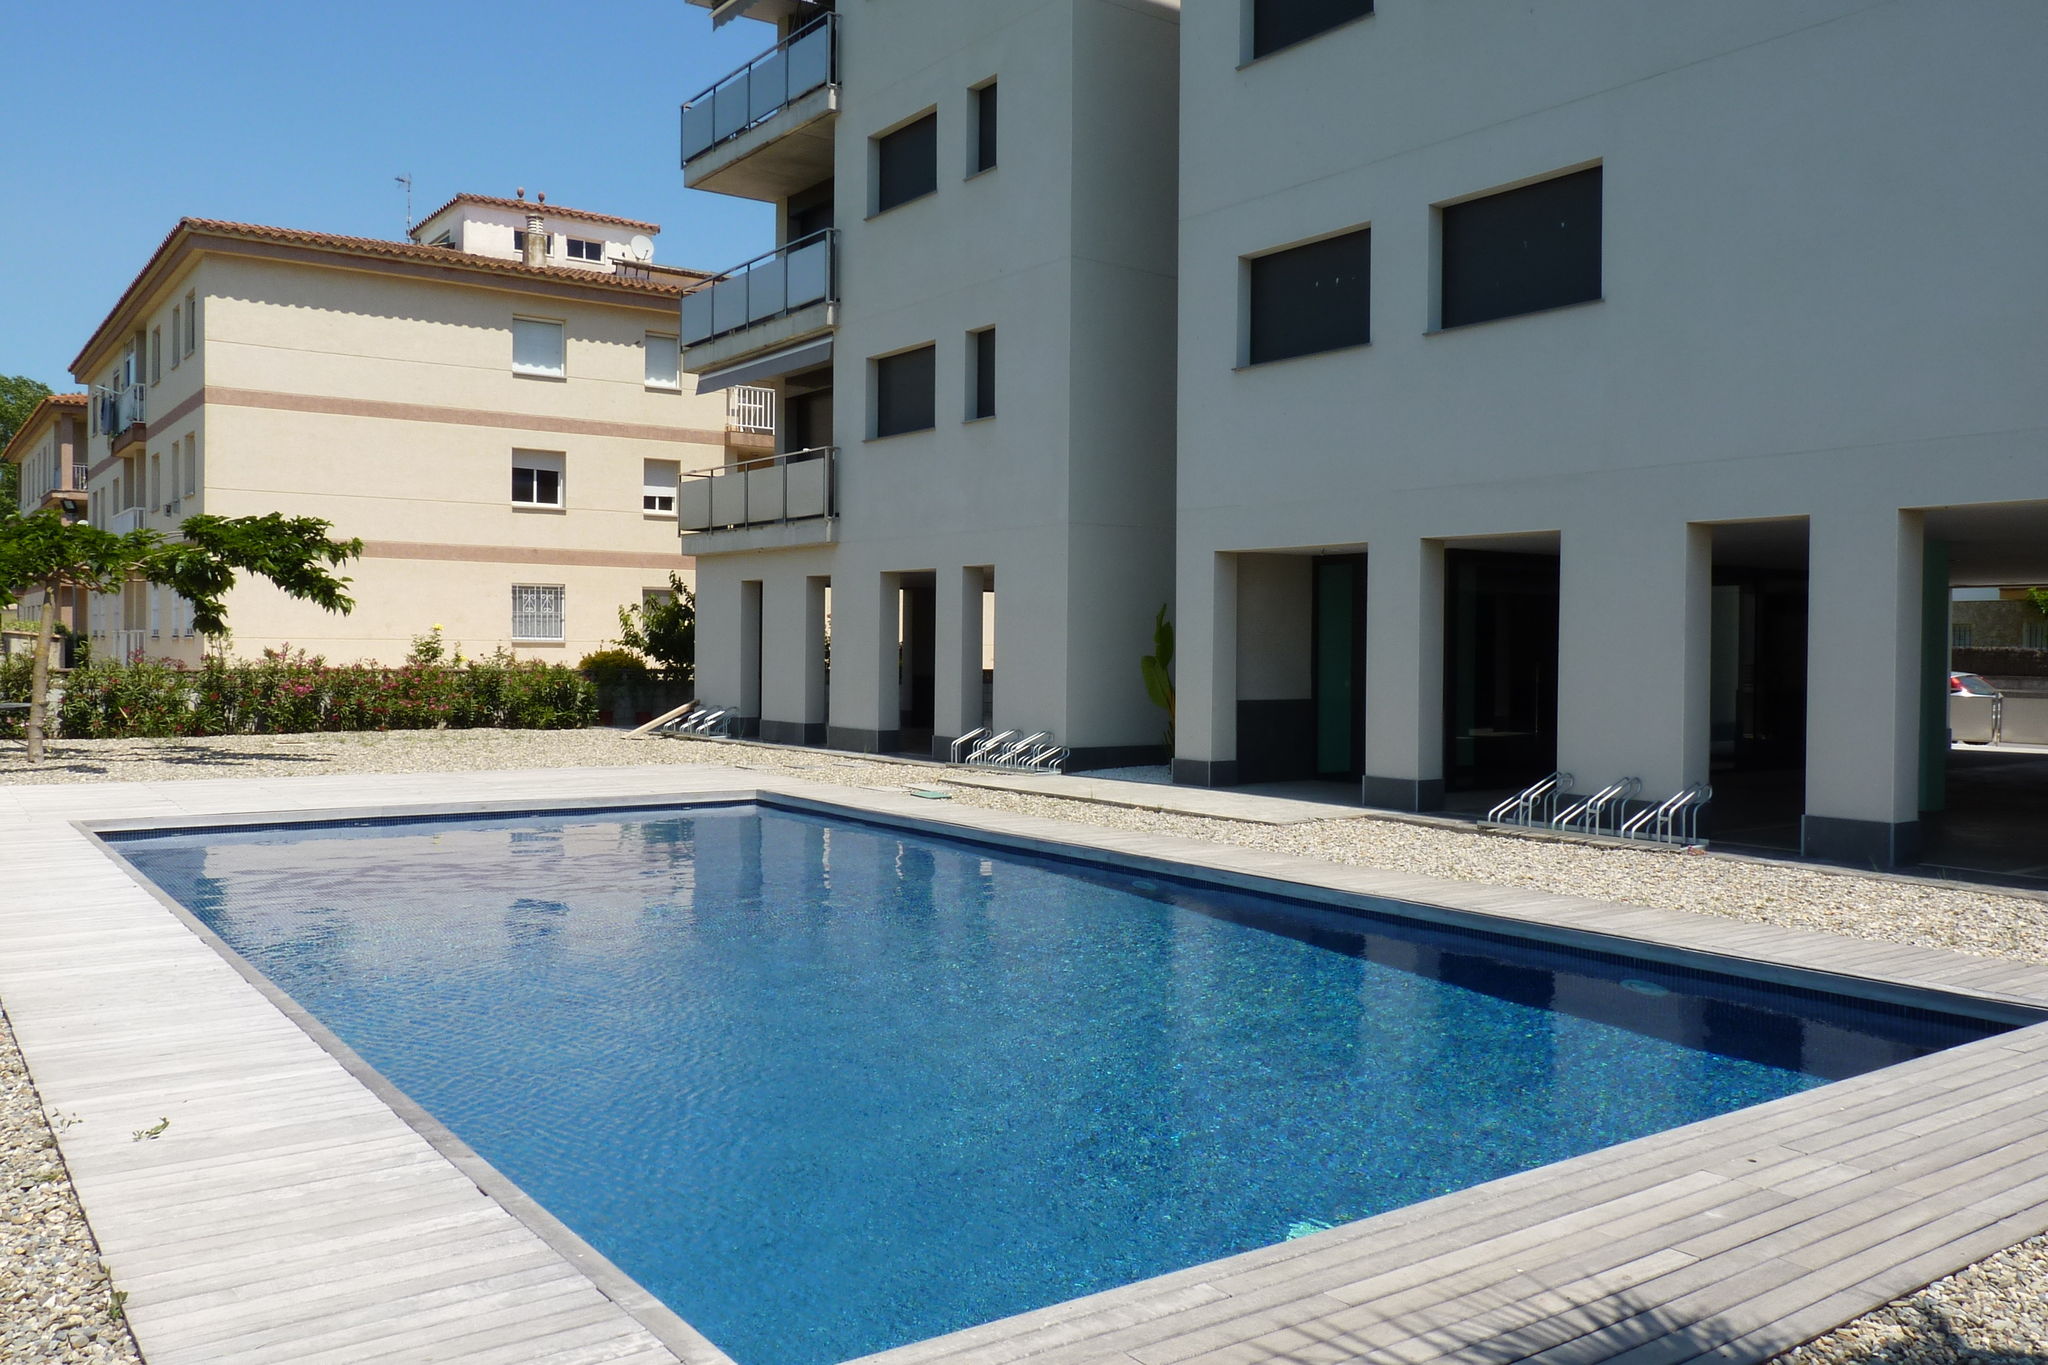 Bel appartement avec piscine commune à St Pere Pescador